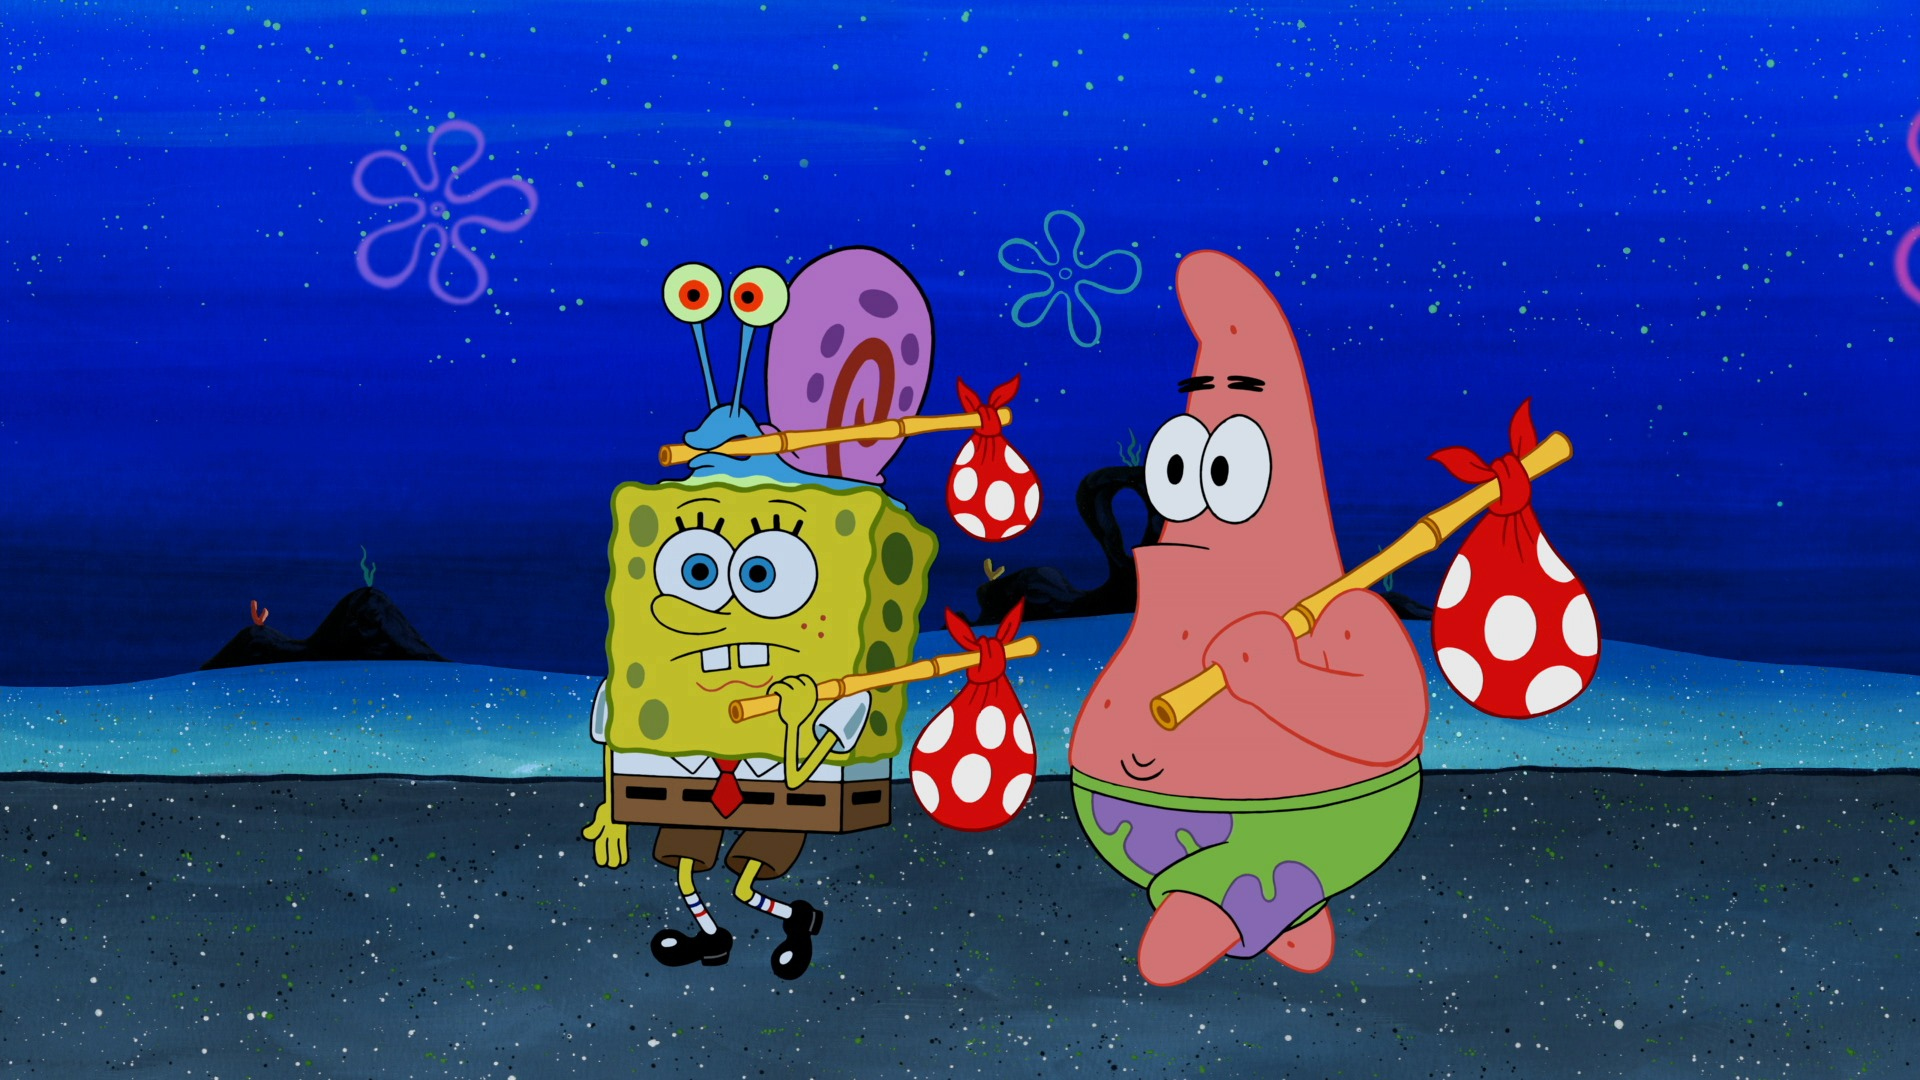 spongebob season 9 is better